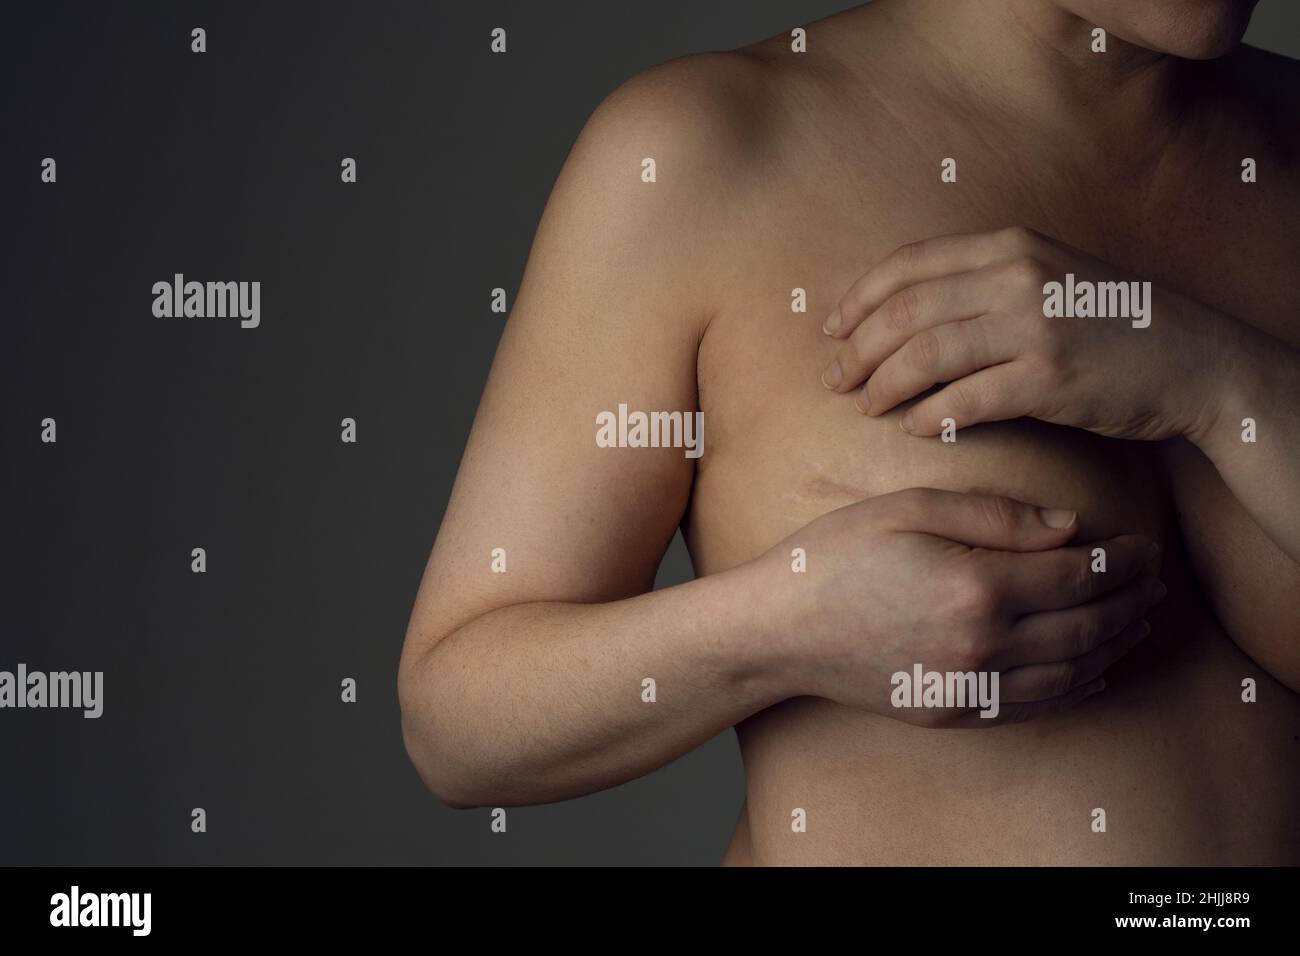 La mujer sobreviviente de cáncer de mama muestra la cicatriz en su pecho después de una mastectomía Fotografía de stock foto imagen